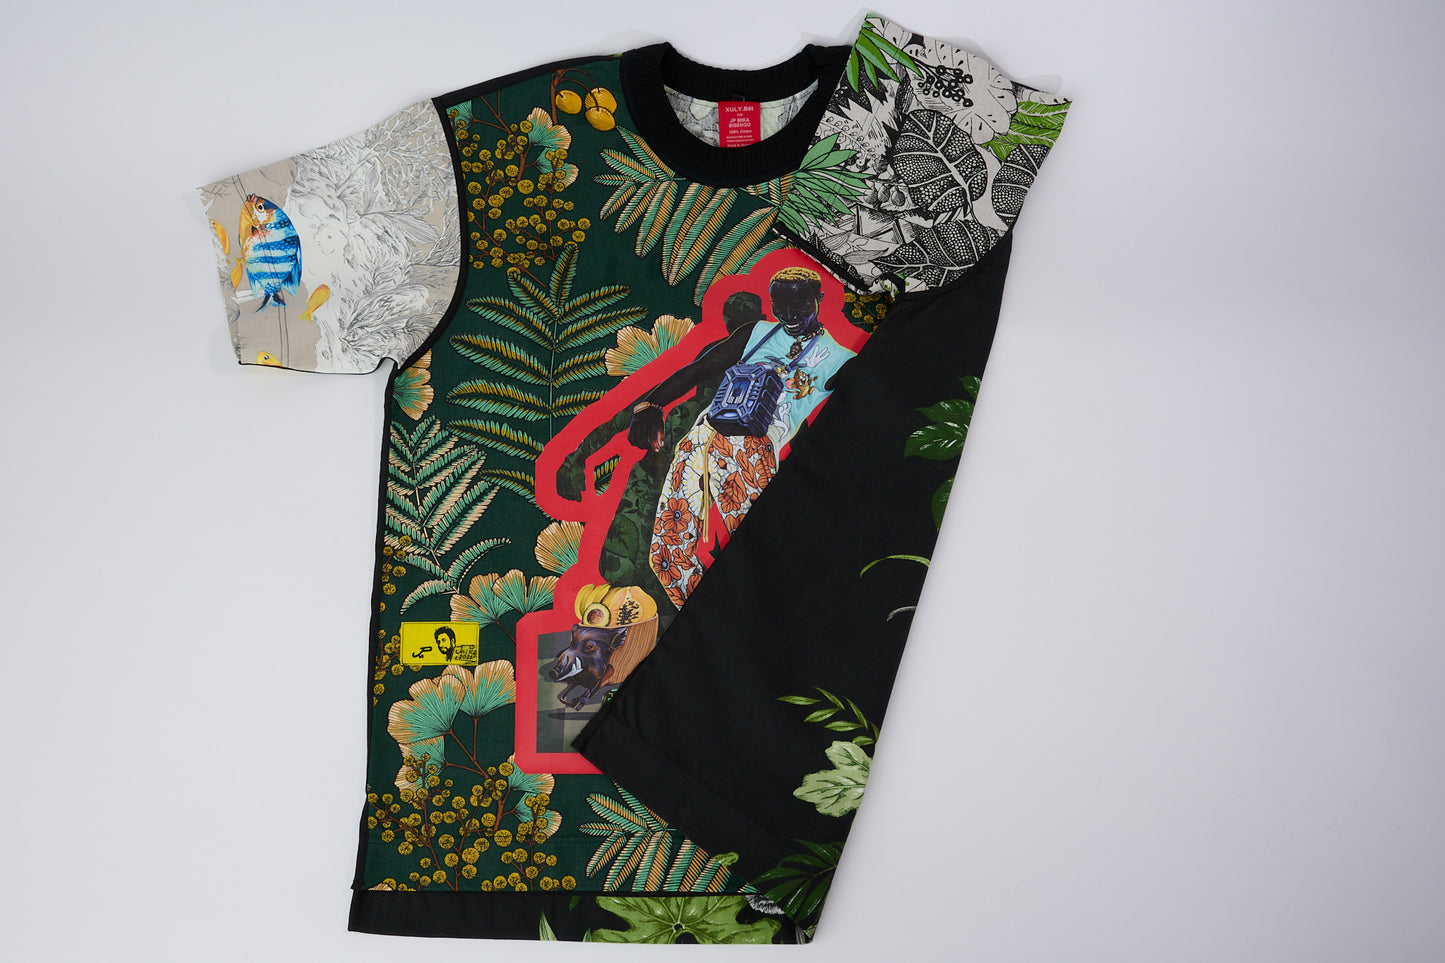 T-shirt BISENGO JP MIKA x XULY-BËT - Numéroté 10/65 - Taille L - Wearable-art inspiré du tableau "Feti n'a Feti" (C'est la fête) de la série de toiles BISENGO de JP MIKA.